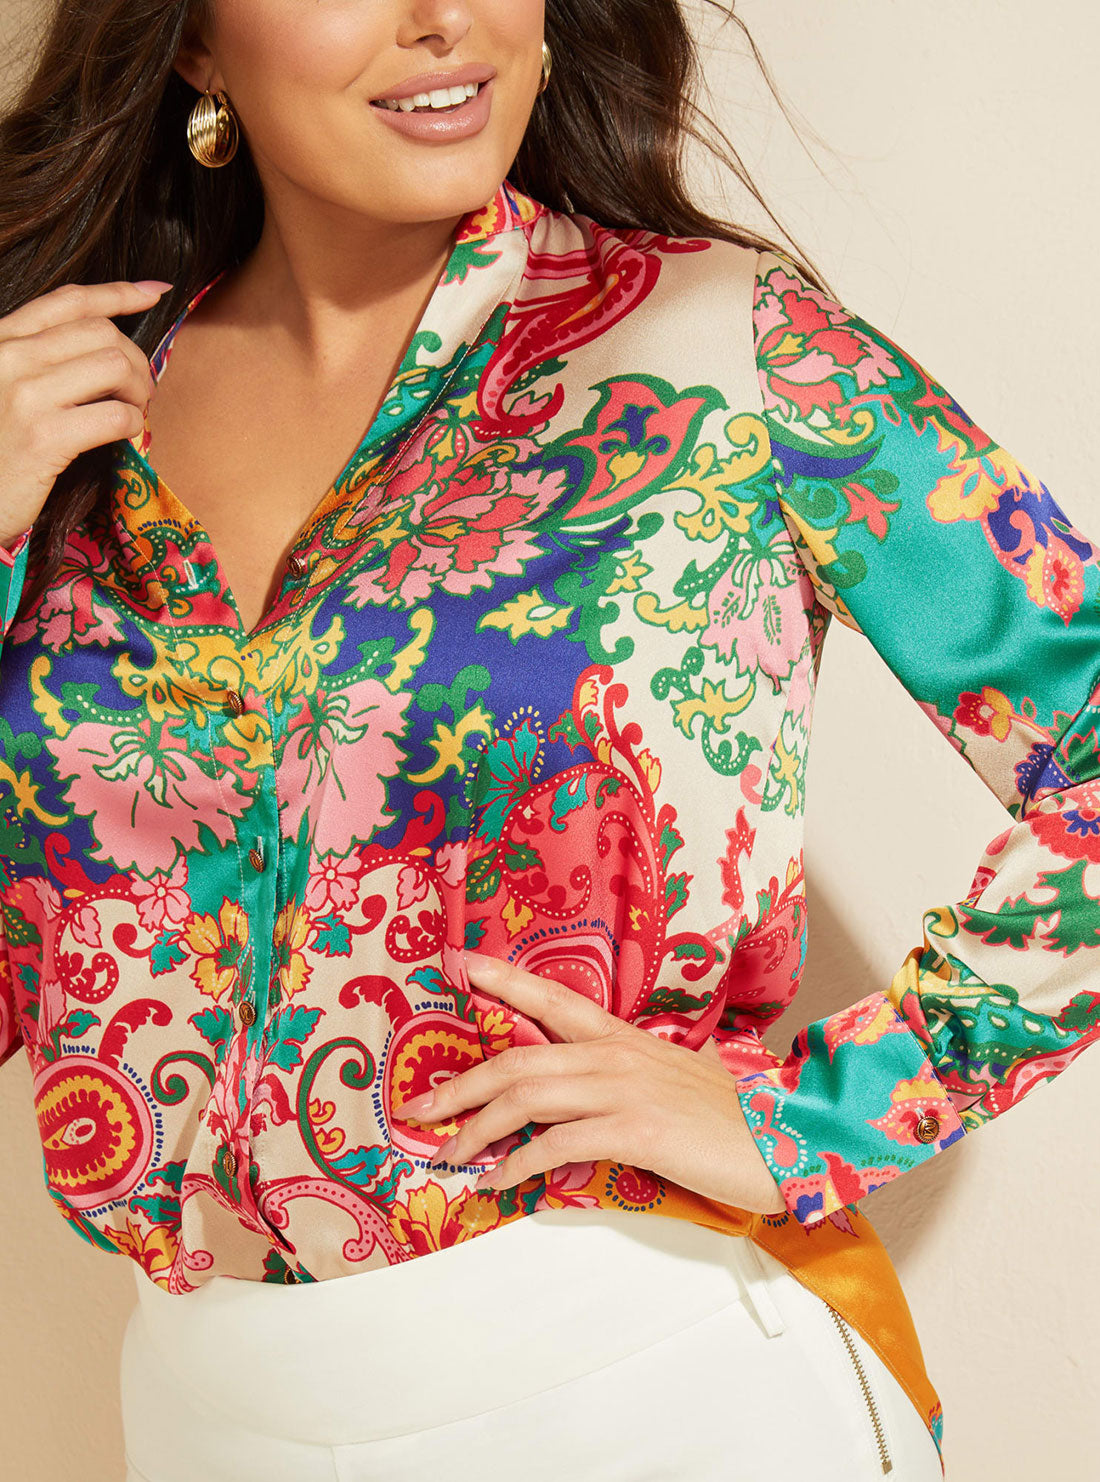 GUESS Women's Marciano Print Blissful Paisley Shirt 2GGH107099Z Detail View